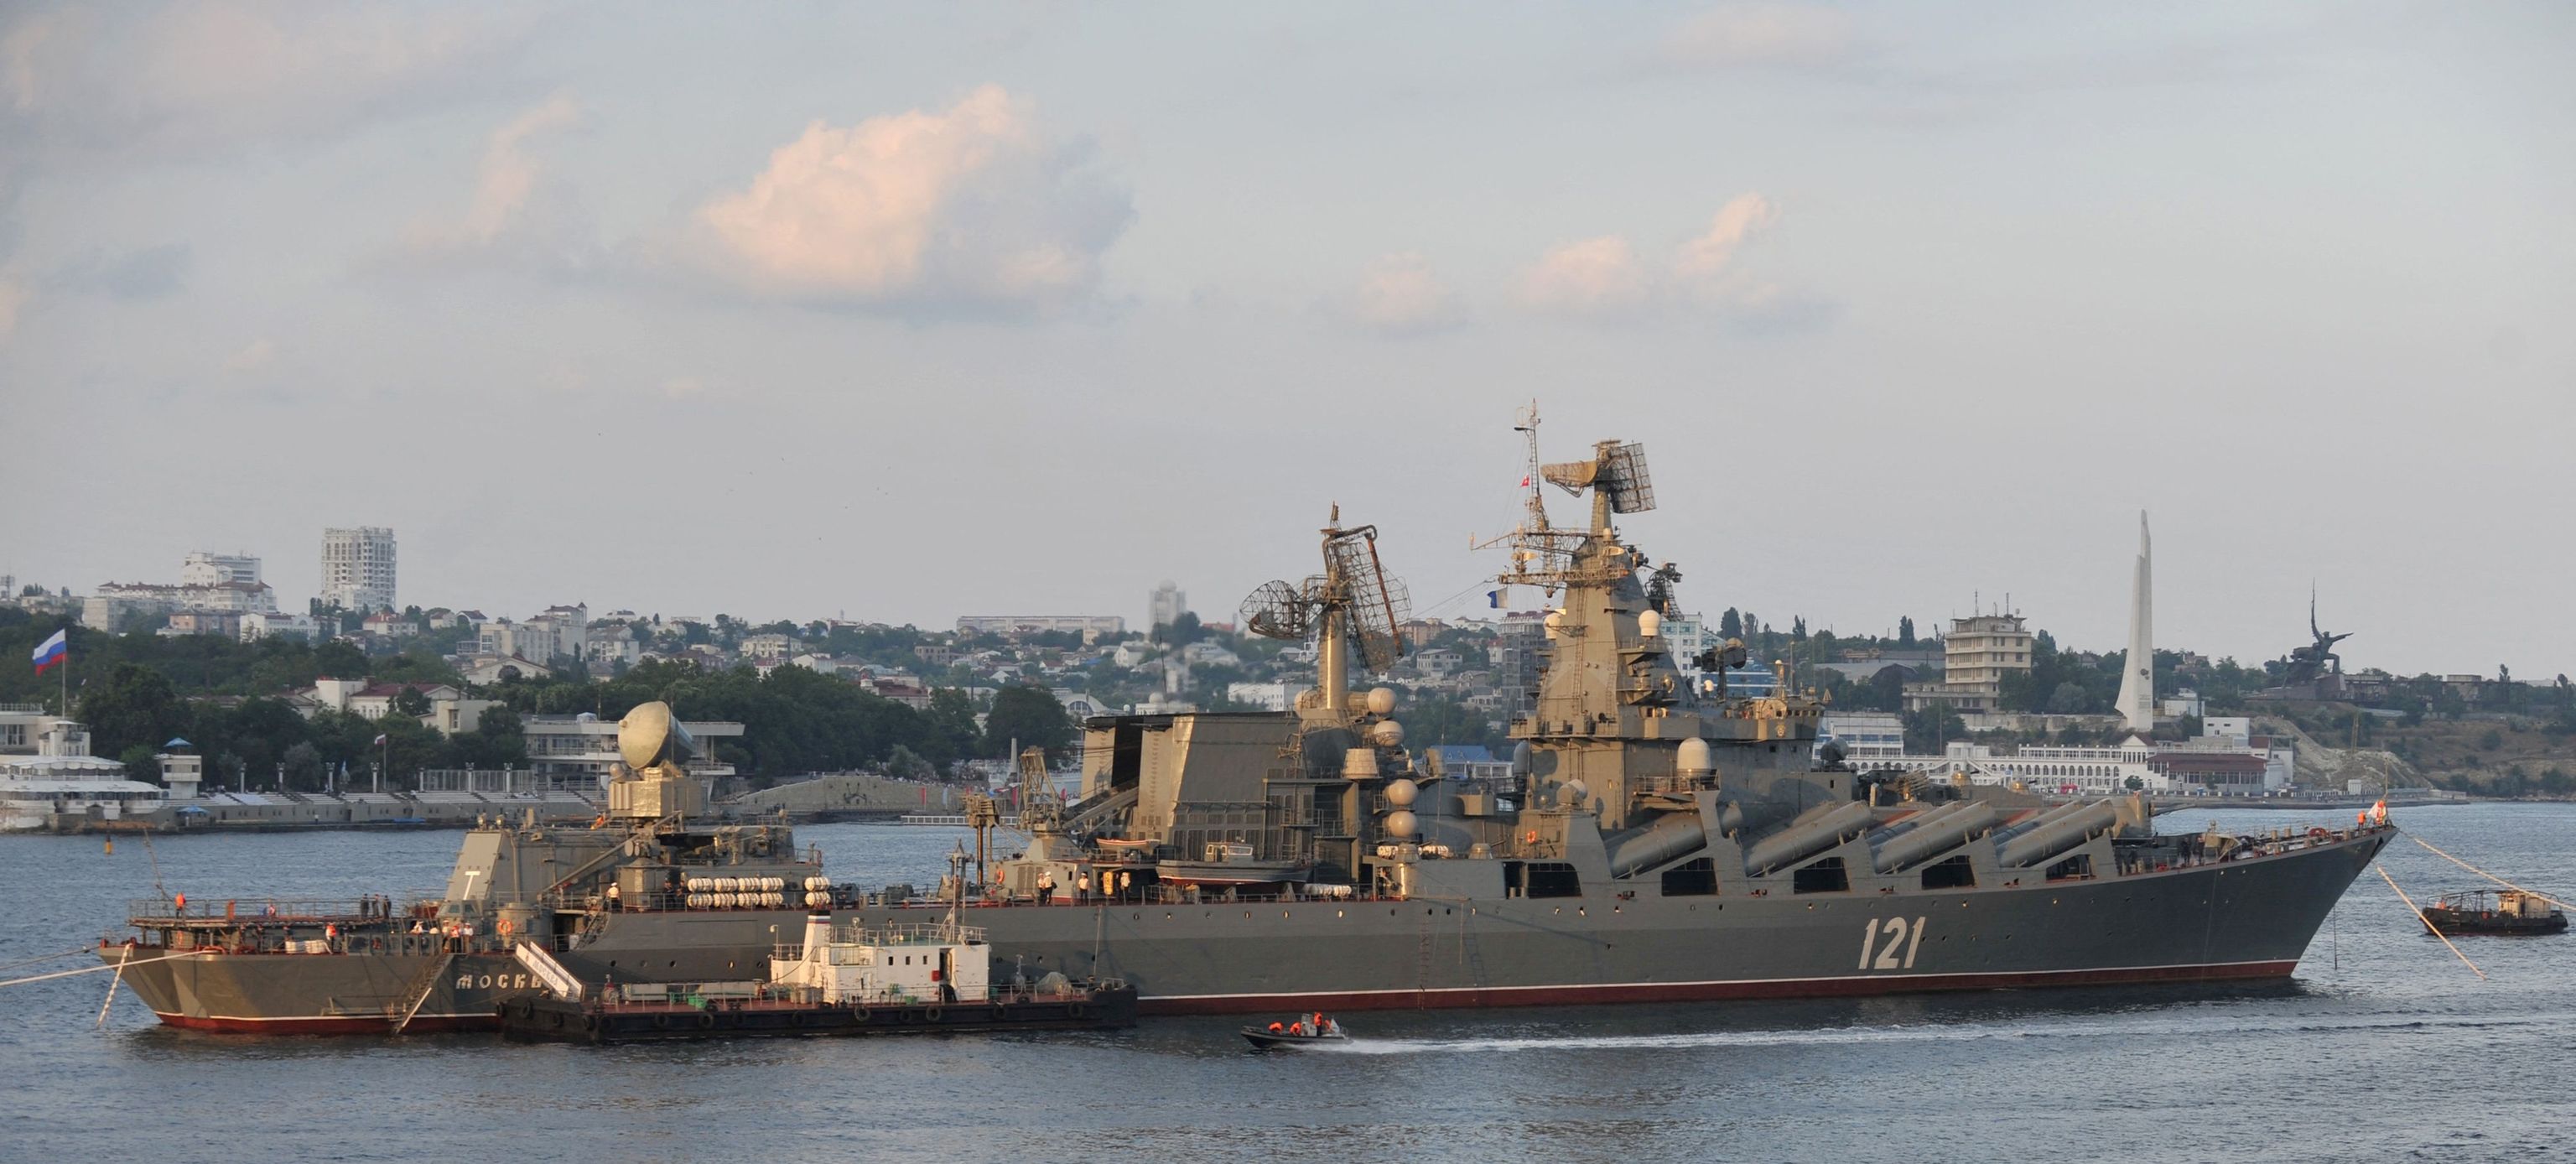 ¿Cómo atravesaron los ucranianos las defensas rusas en el ataque al Moskva? ¿Dónde está su capitán?